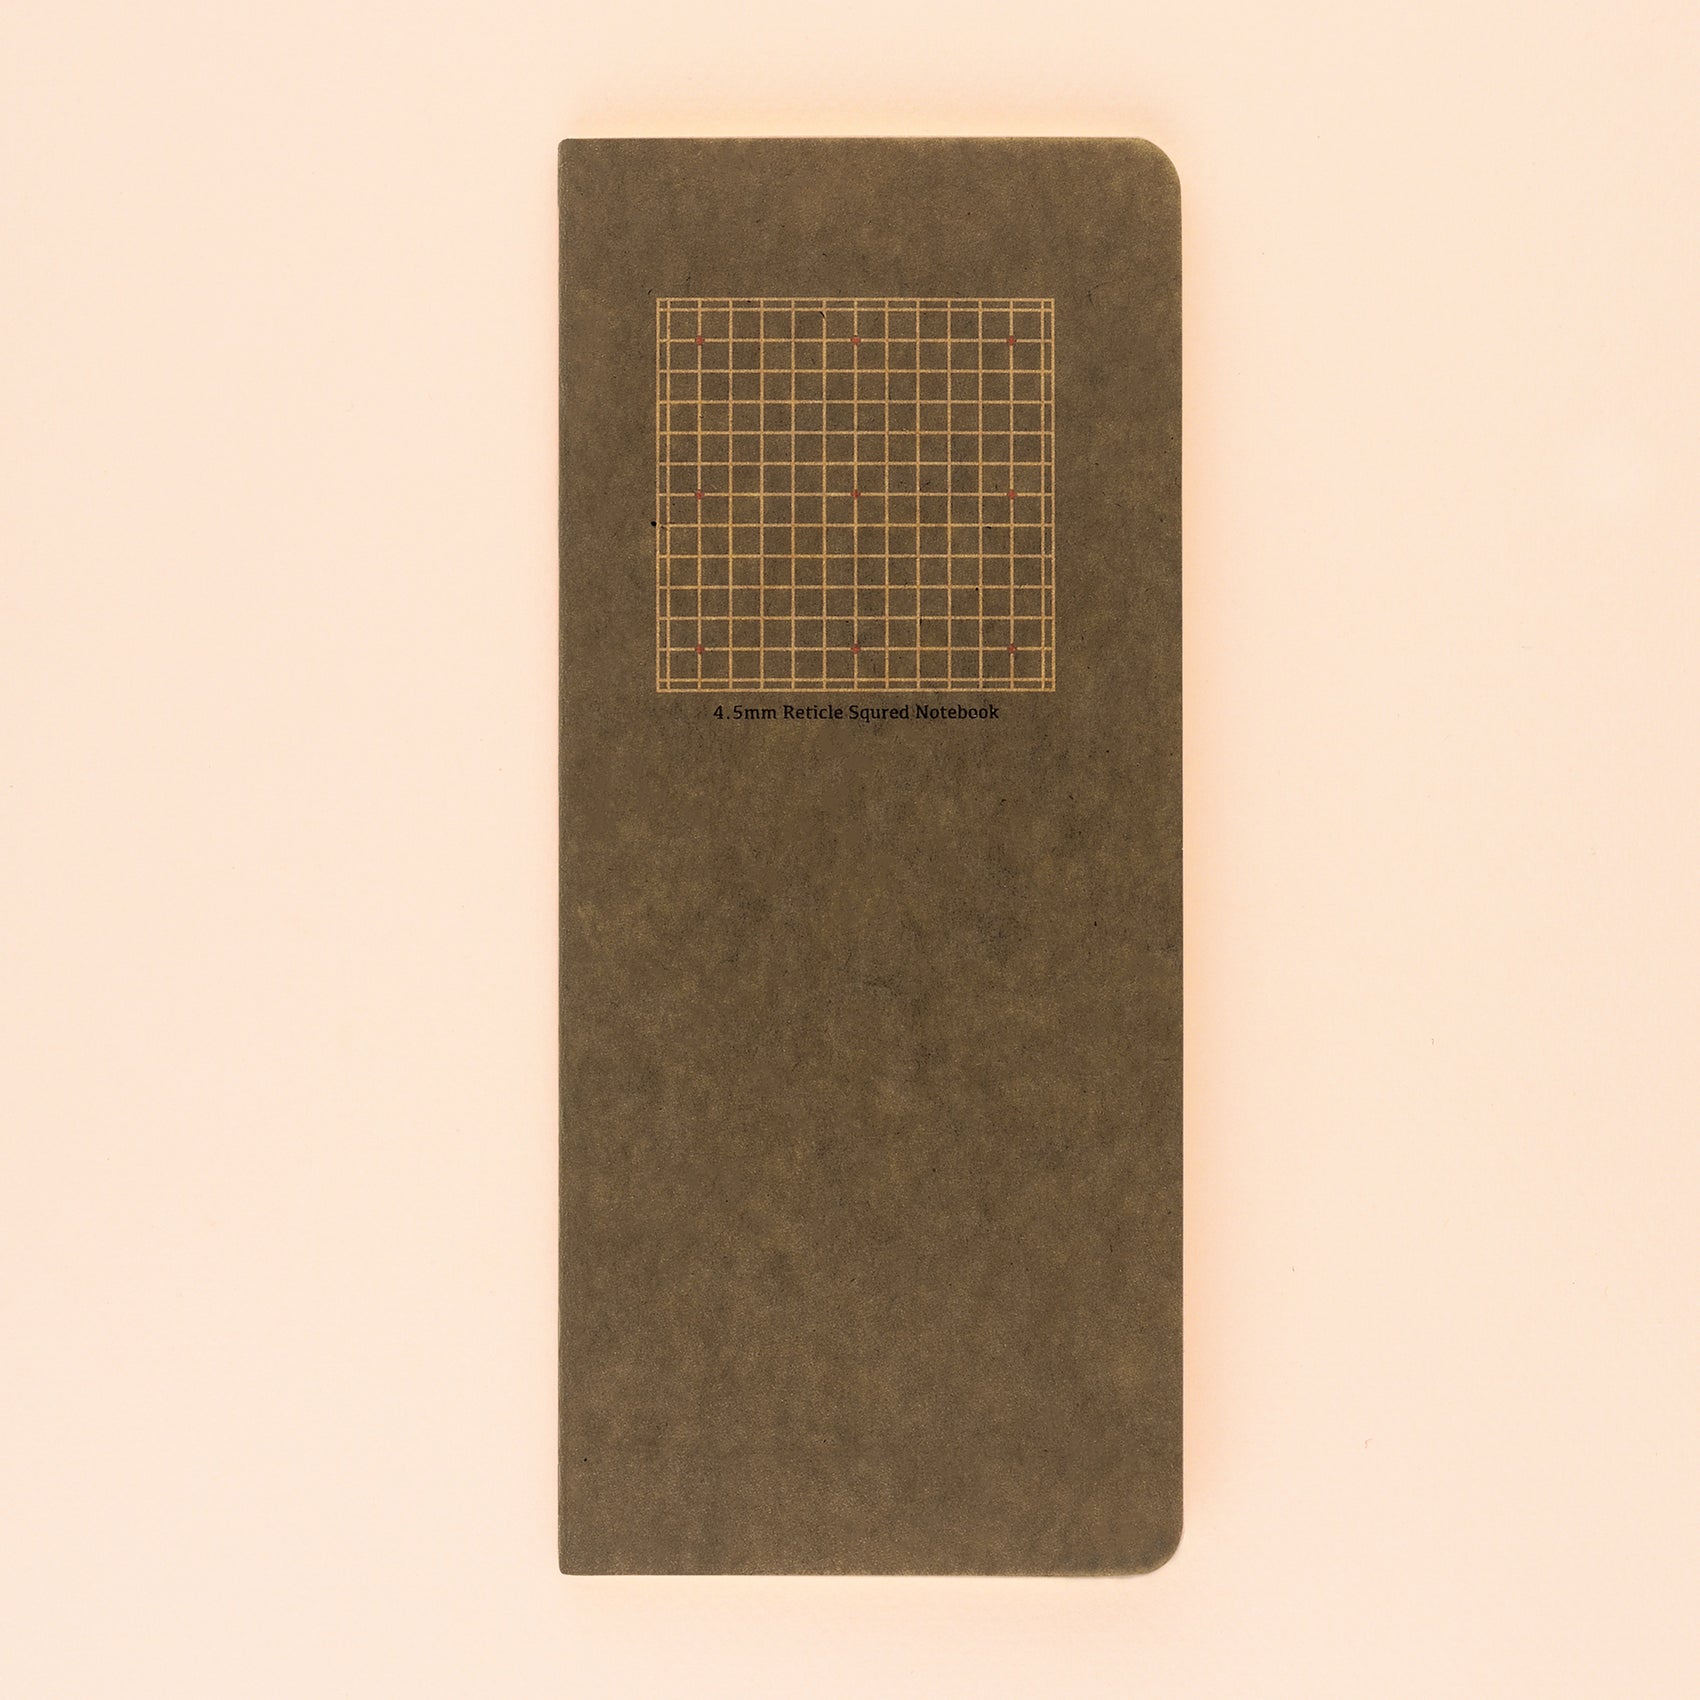 Yamamoto Ro-Biki Notebook 4.5 MM Reticle Square